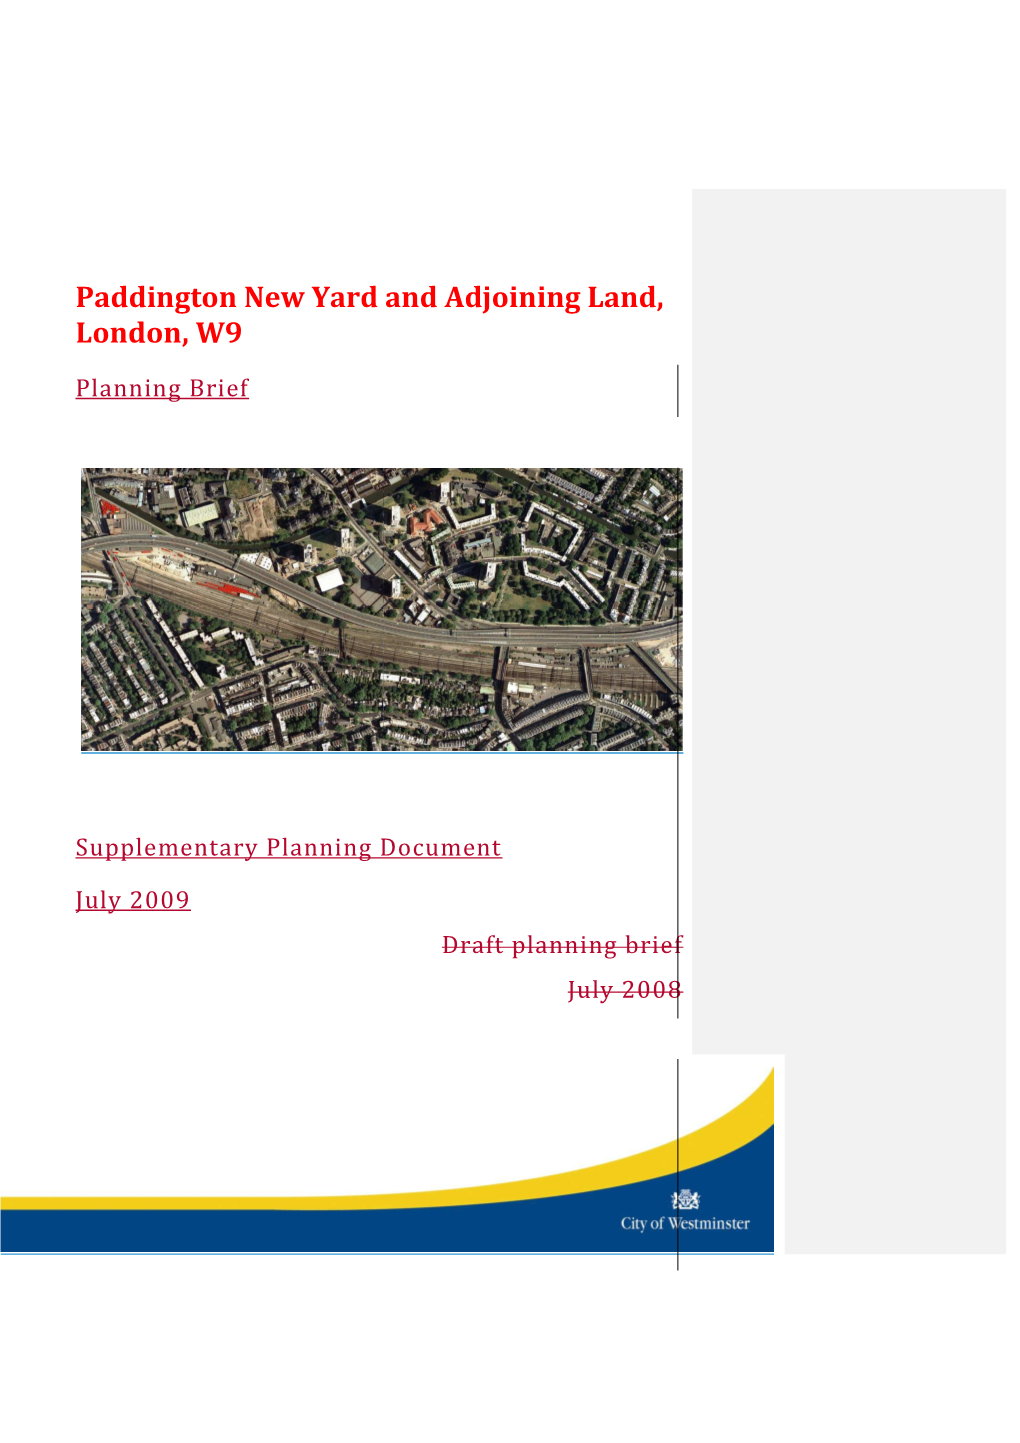 Paddington New Yard and Adjoining Land, London, W9